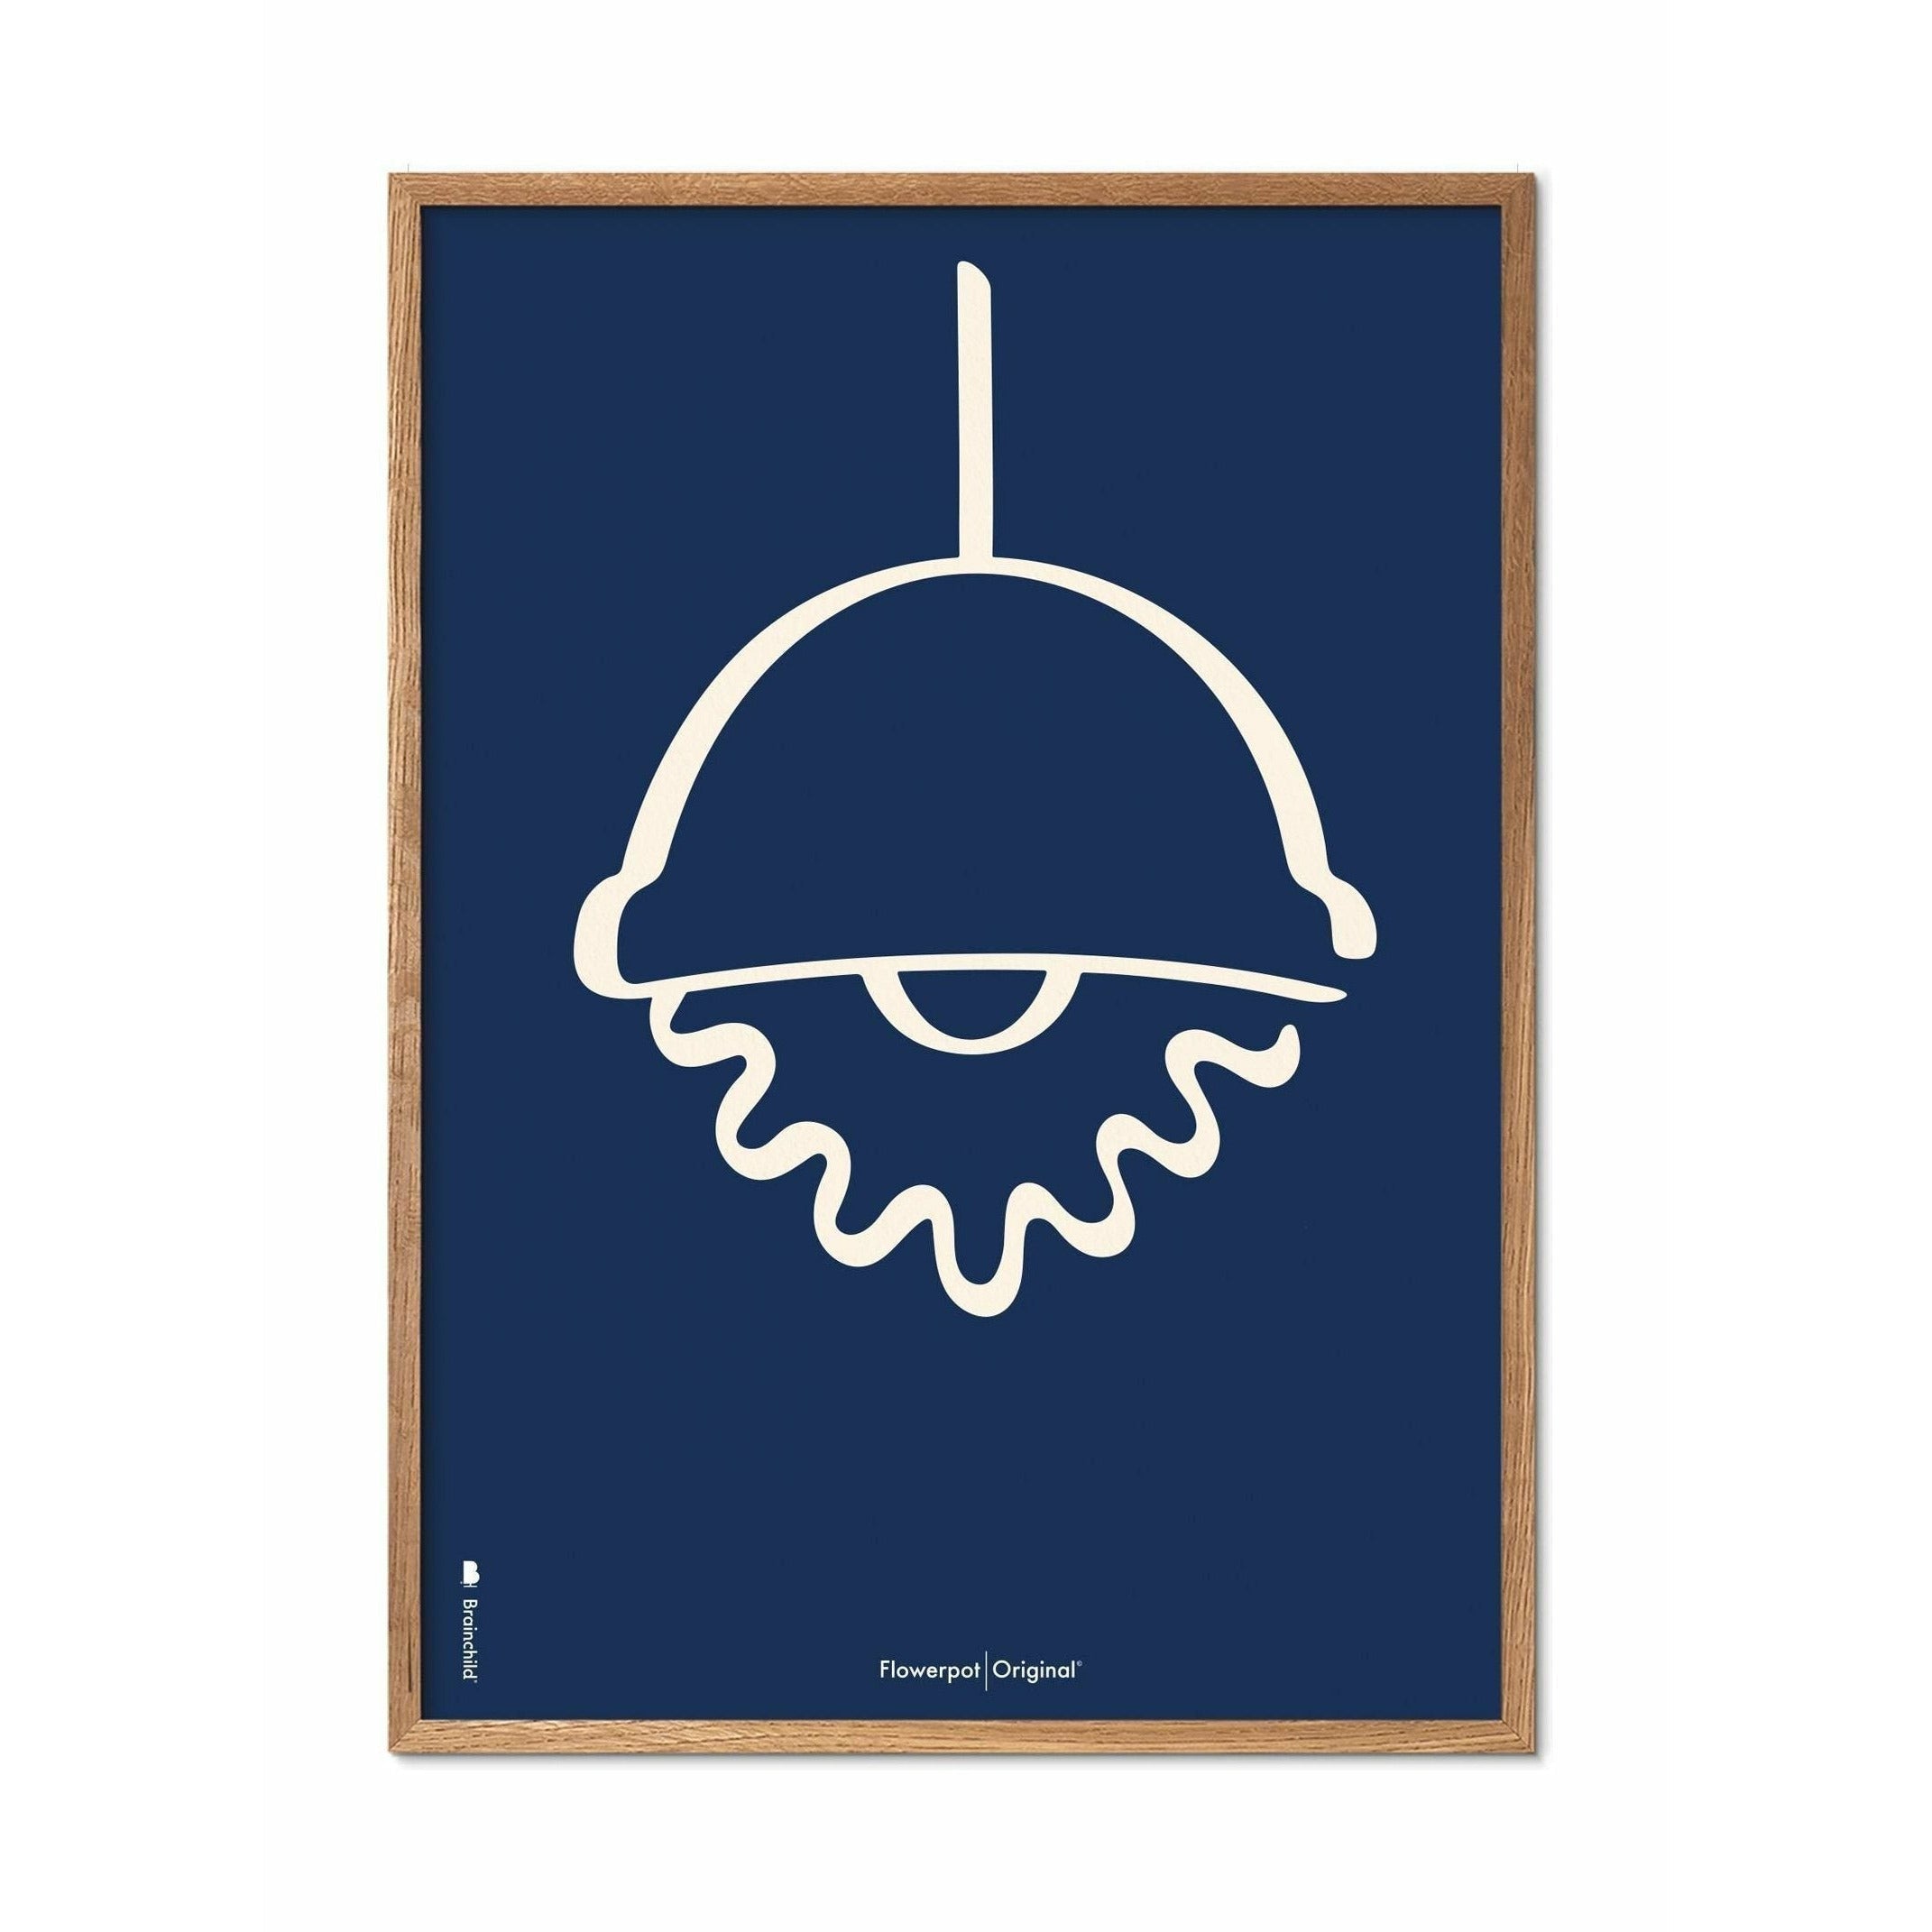 Plakát Brainchild Flowerpot Line, lehký dřevěný rám A5, modré pozadí